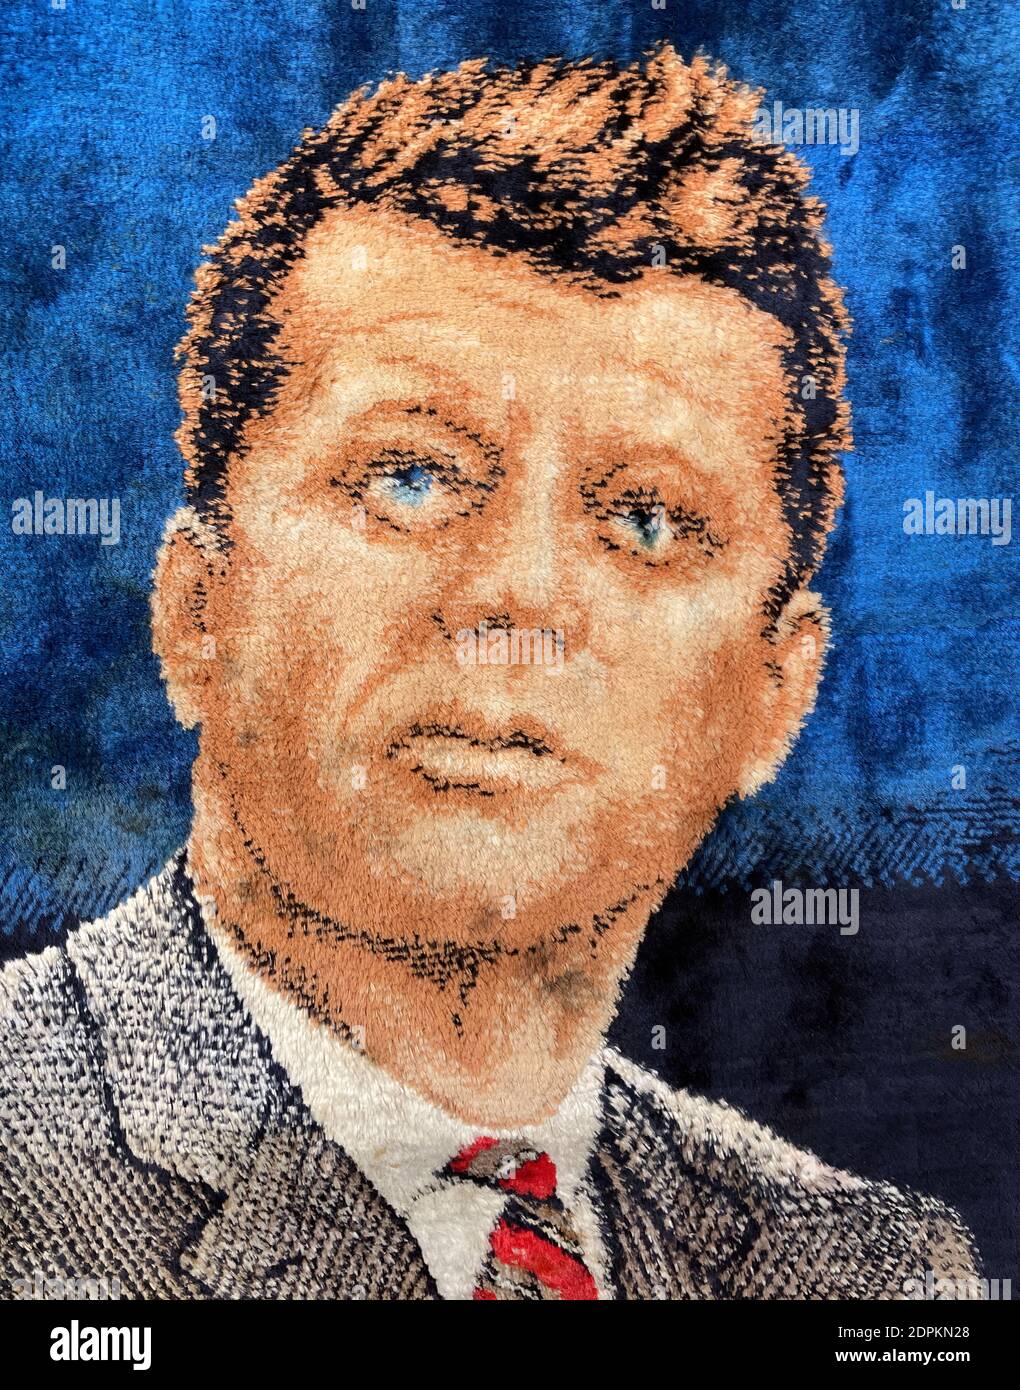 Un portrait de John F Kennedy, le 35e président des États-Unis, à partir d'une couverture tissée. Banque D'Images